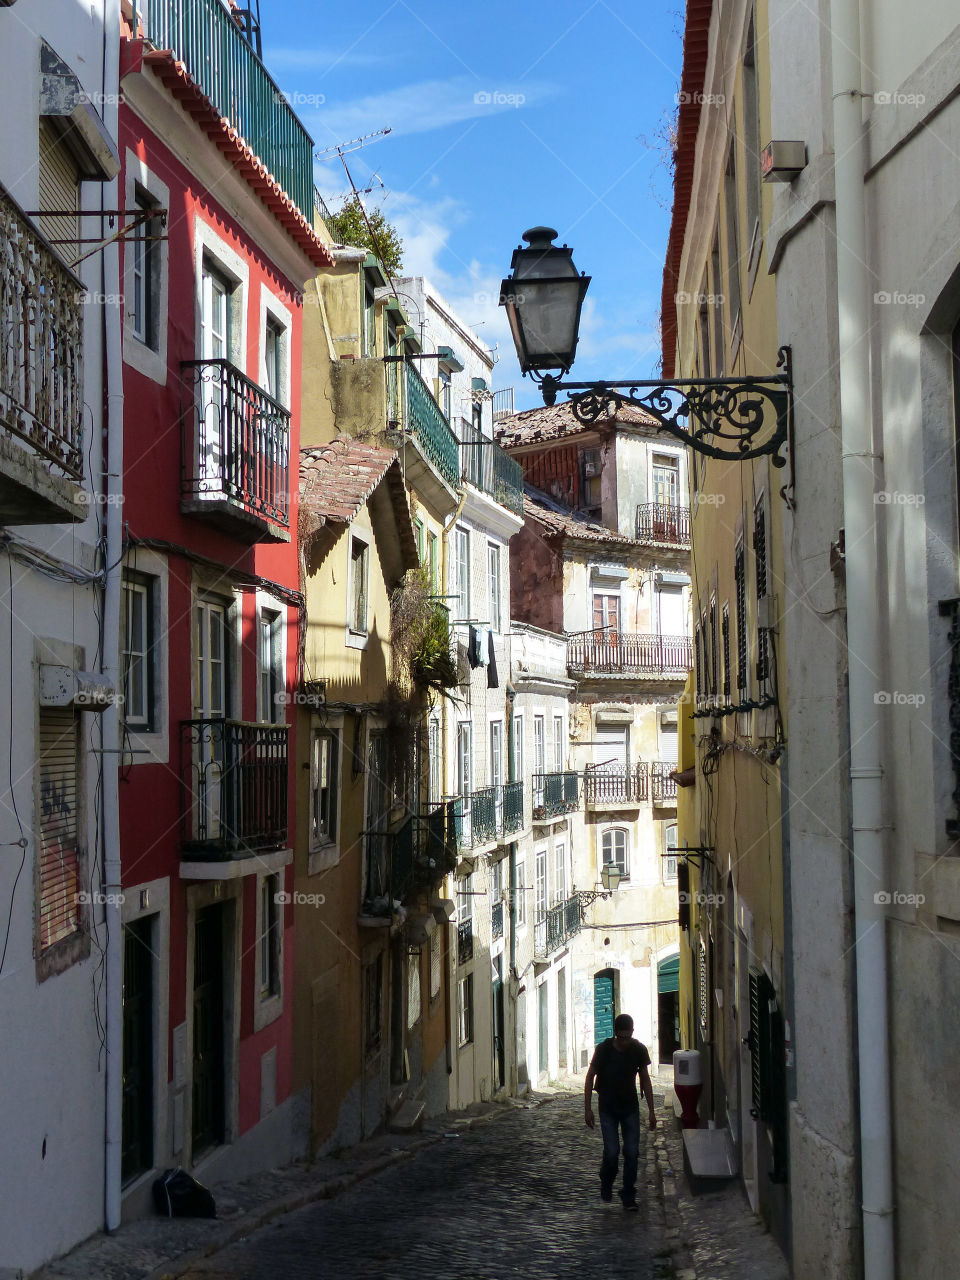 Street in Lisbon. A typical Street in Lisbon